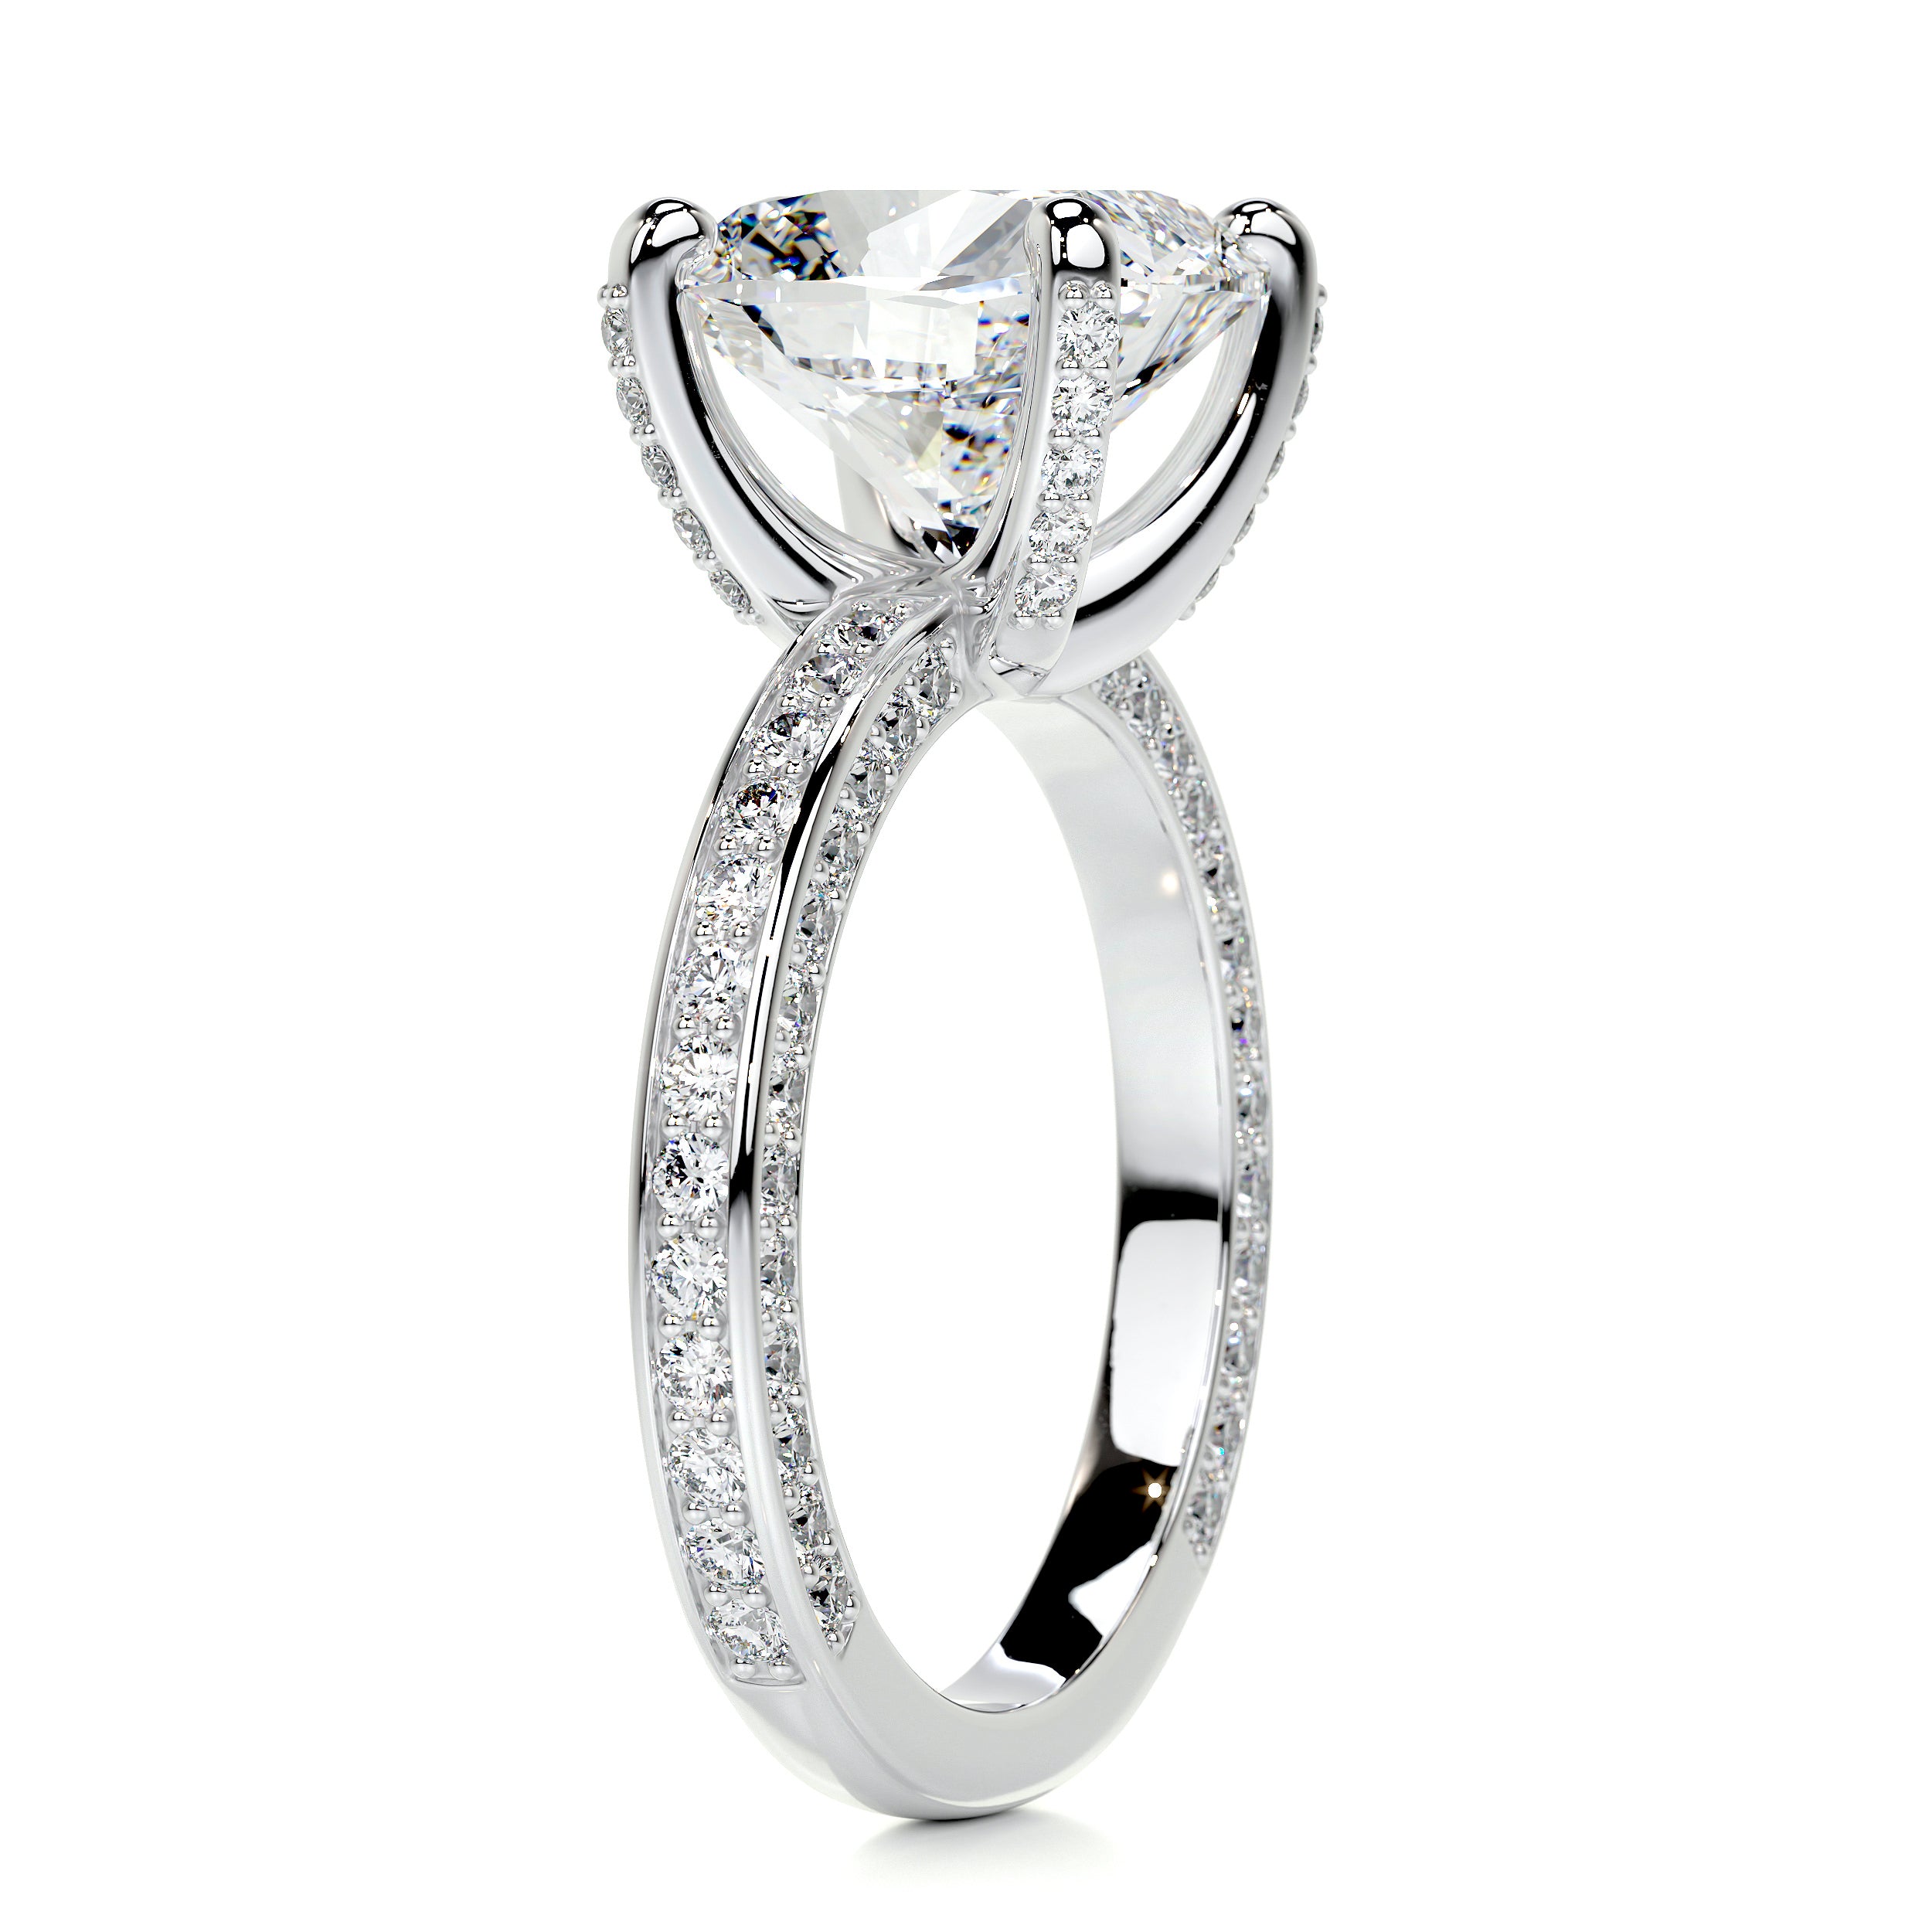 Lyric Diamond Engagement Ring   (2.75 Carat) -18K White Gold